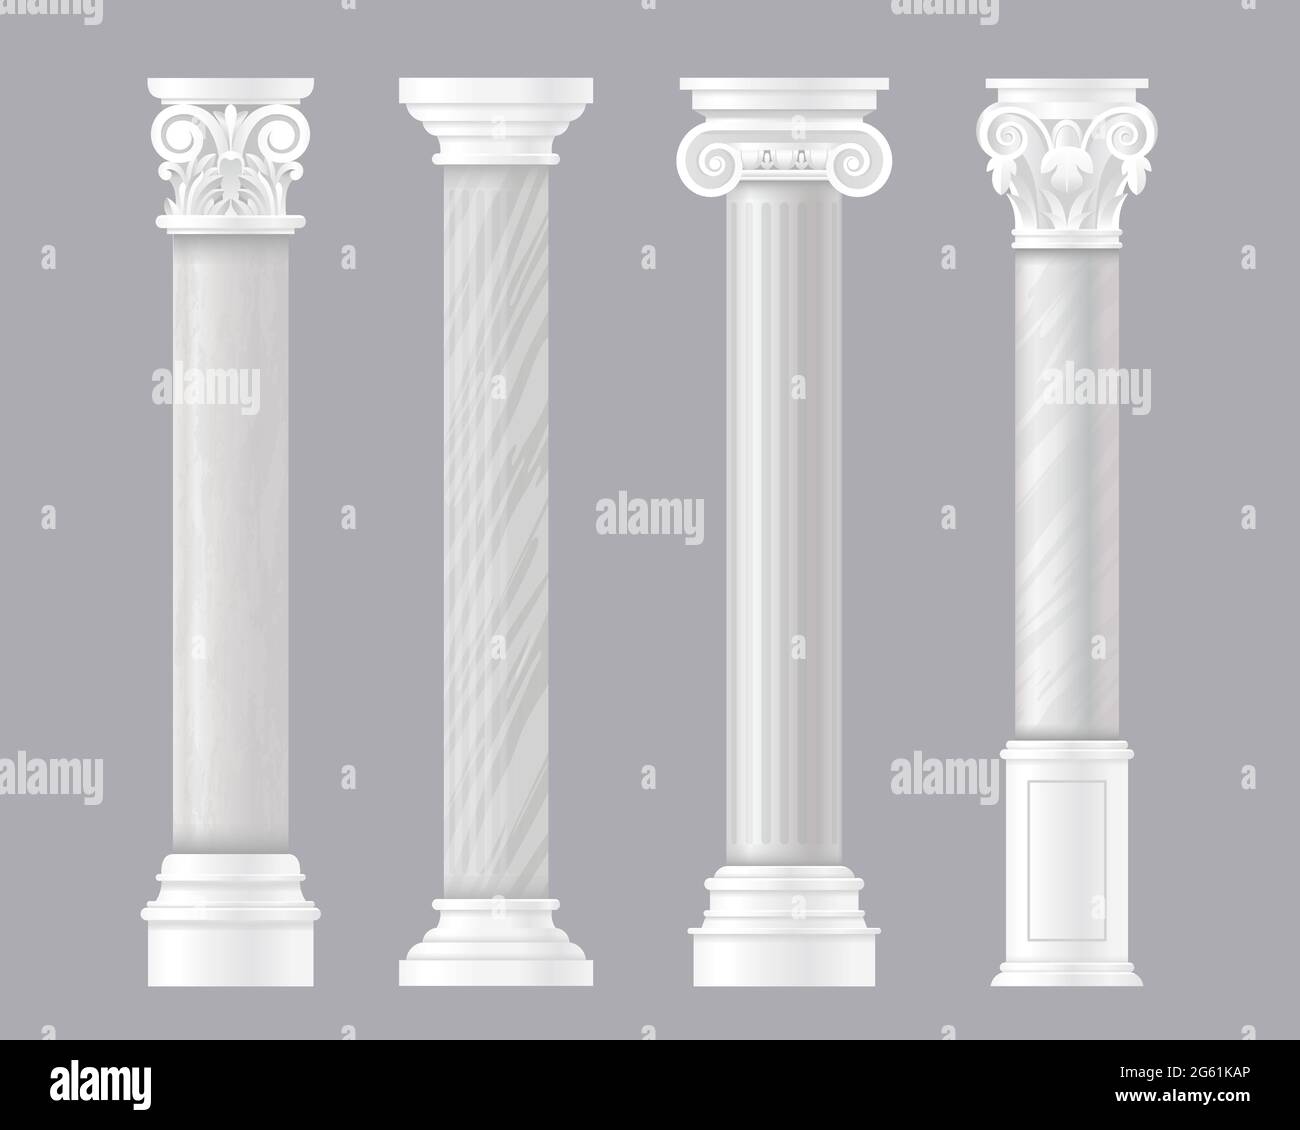 Colonne illustrazioni vettoriali, antico insieme architettonico di Roma o colonne in marmo greco classico, antica architettura dell'impero romano con pietra Illustrazione Vettoriale